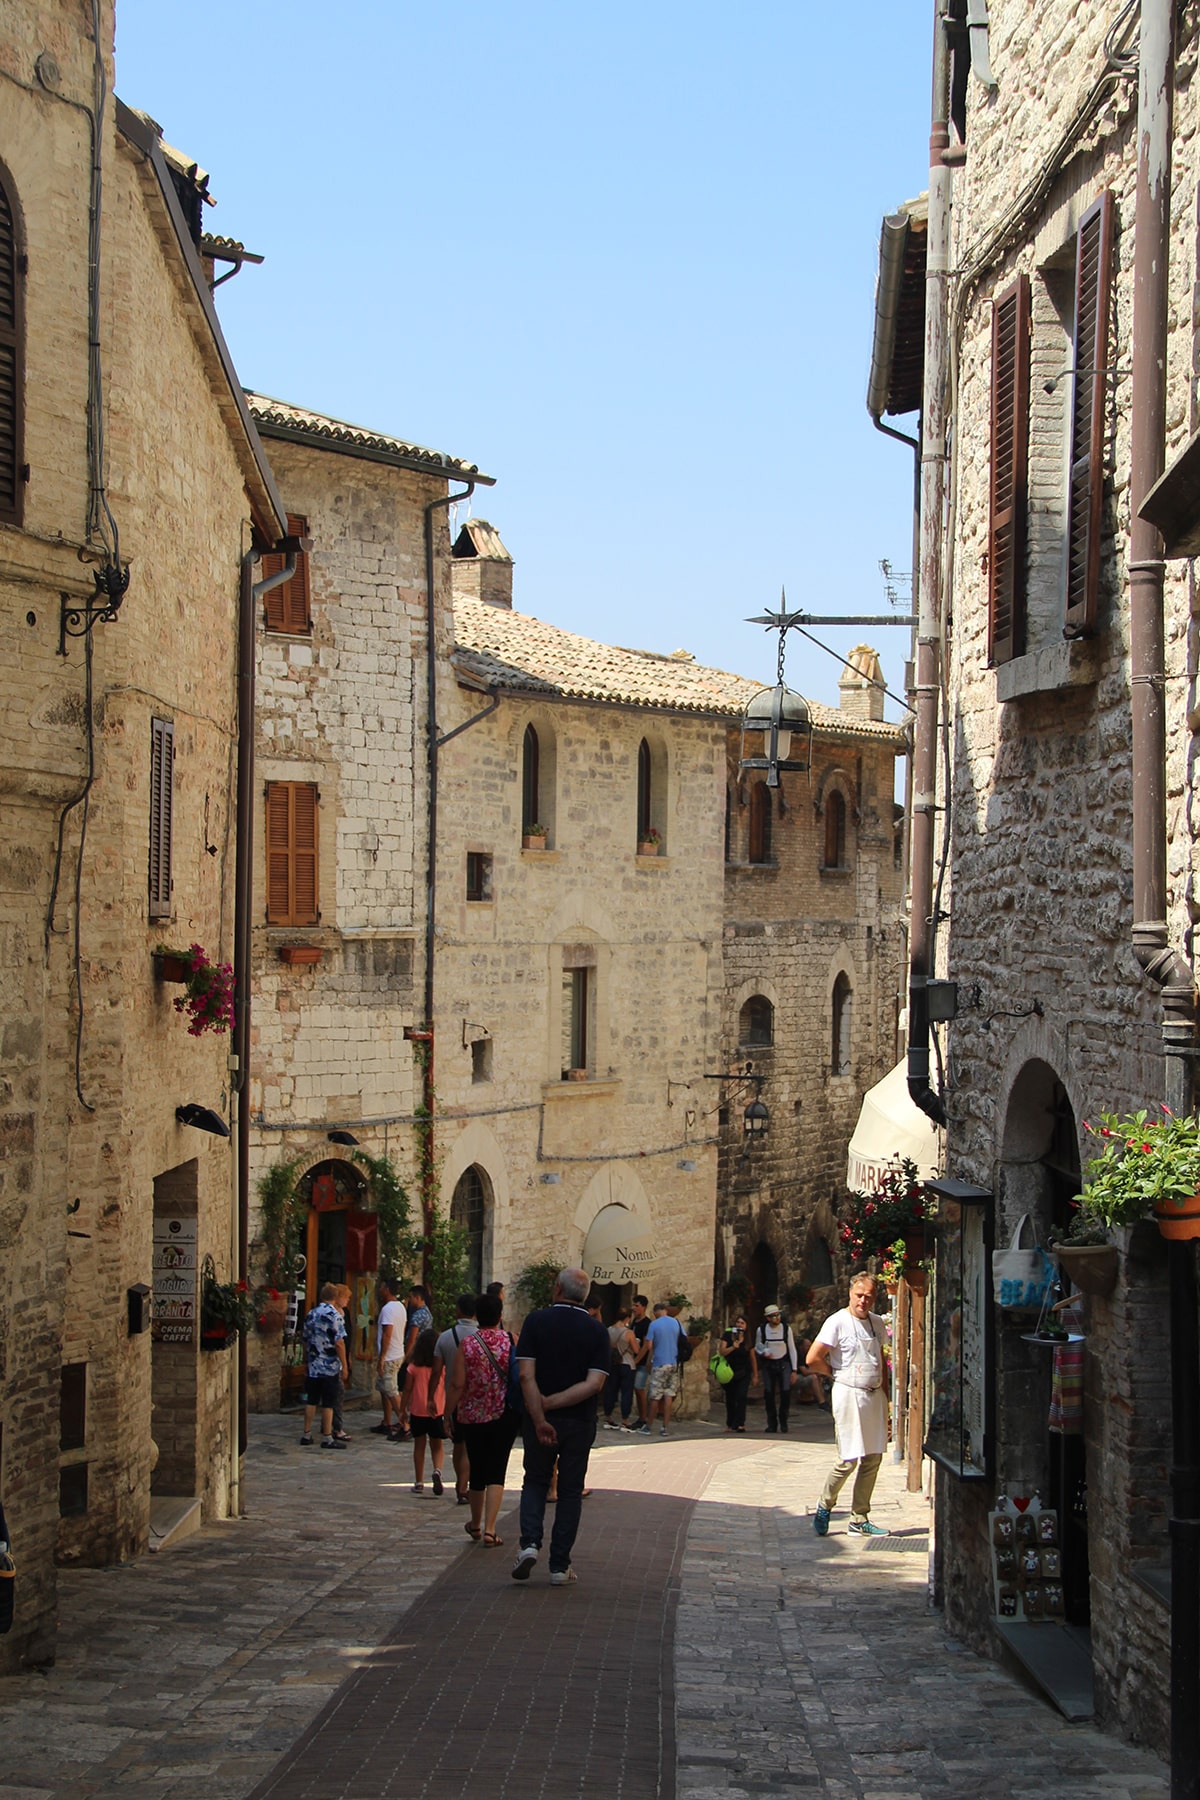 La strada principale di Assisi verso il basso